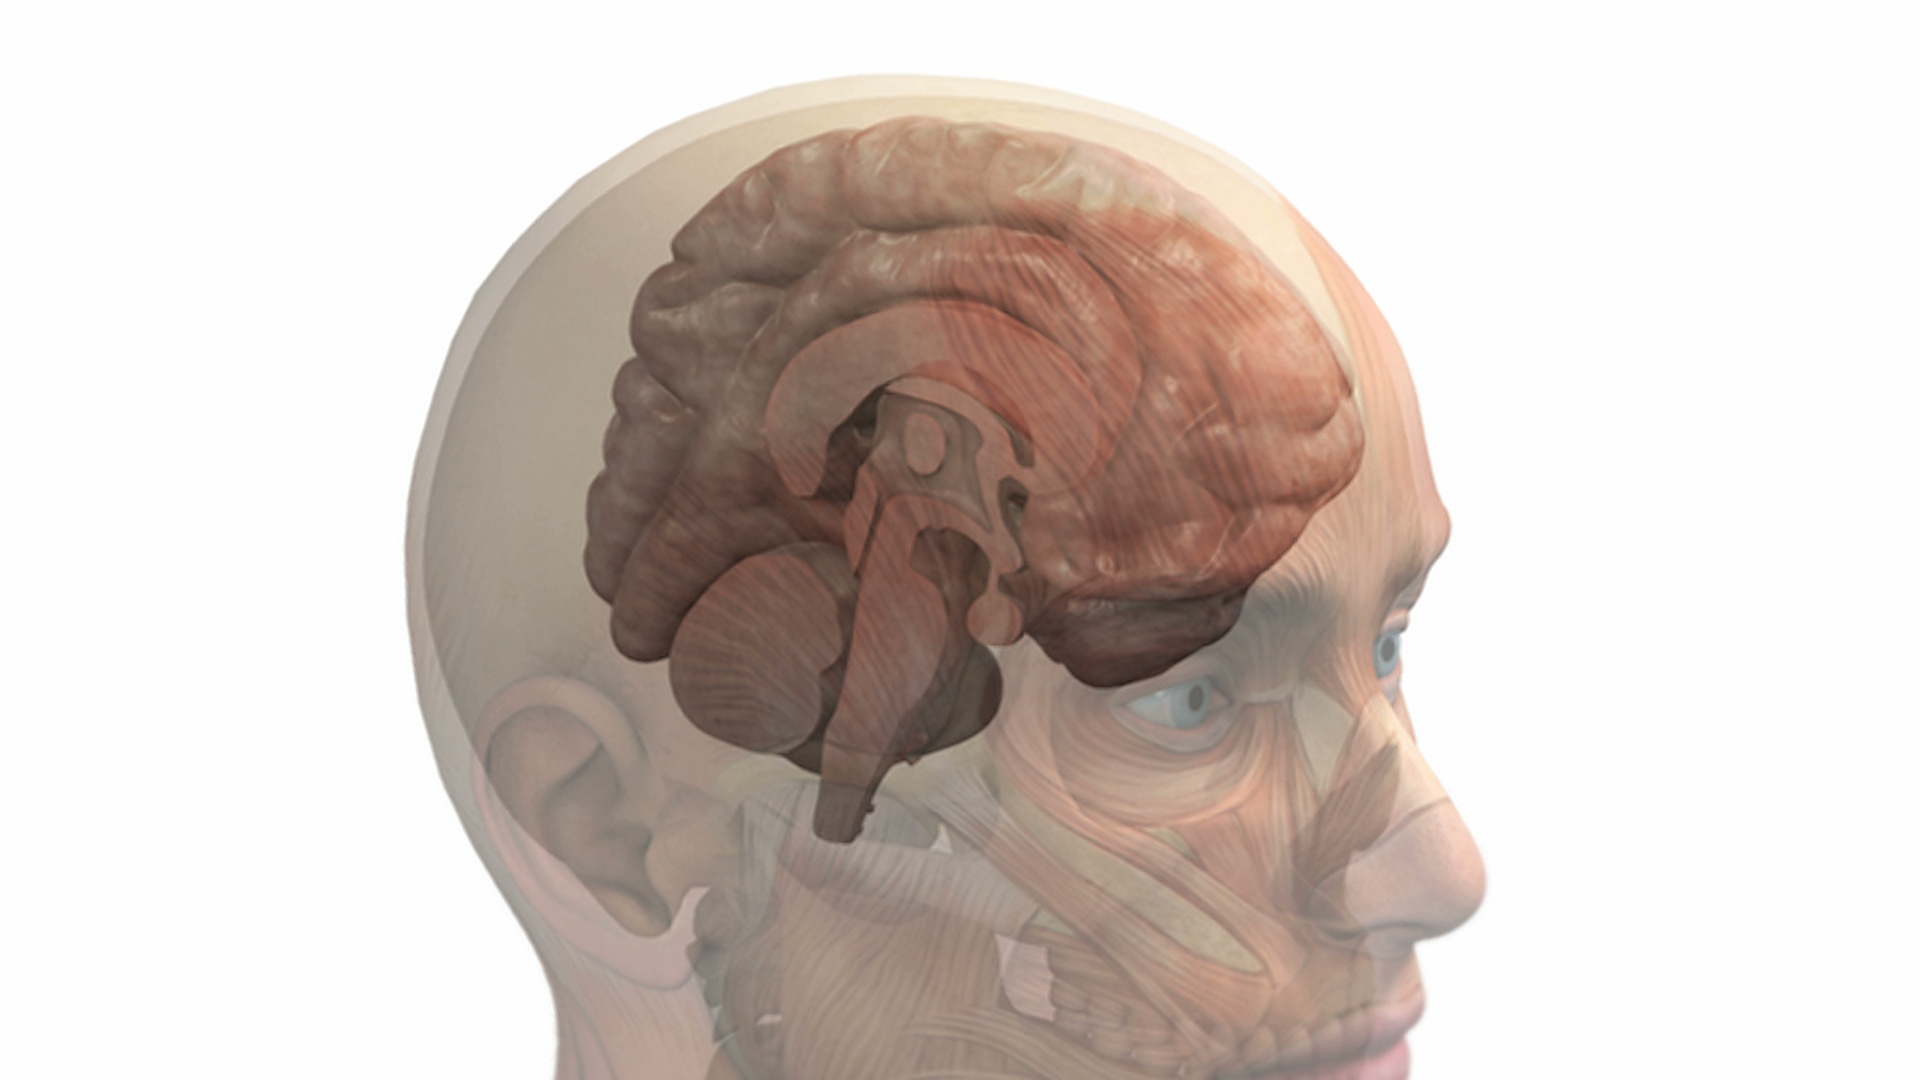 动画描绘的大脑内部的头骨和头部。当摄像机聚焦到大脑时，头部、头骨和大脑的一半逐渐减弱，留下大脑的矢状面。视频下载